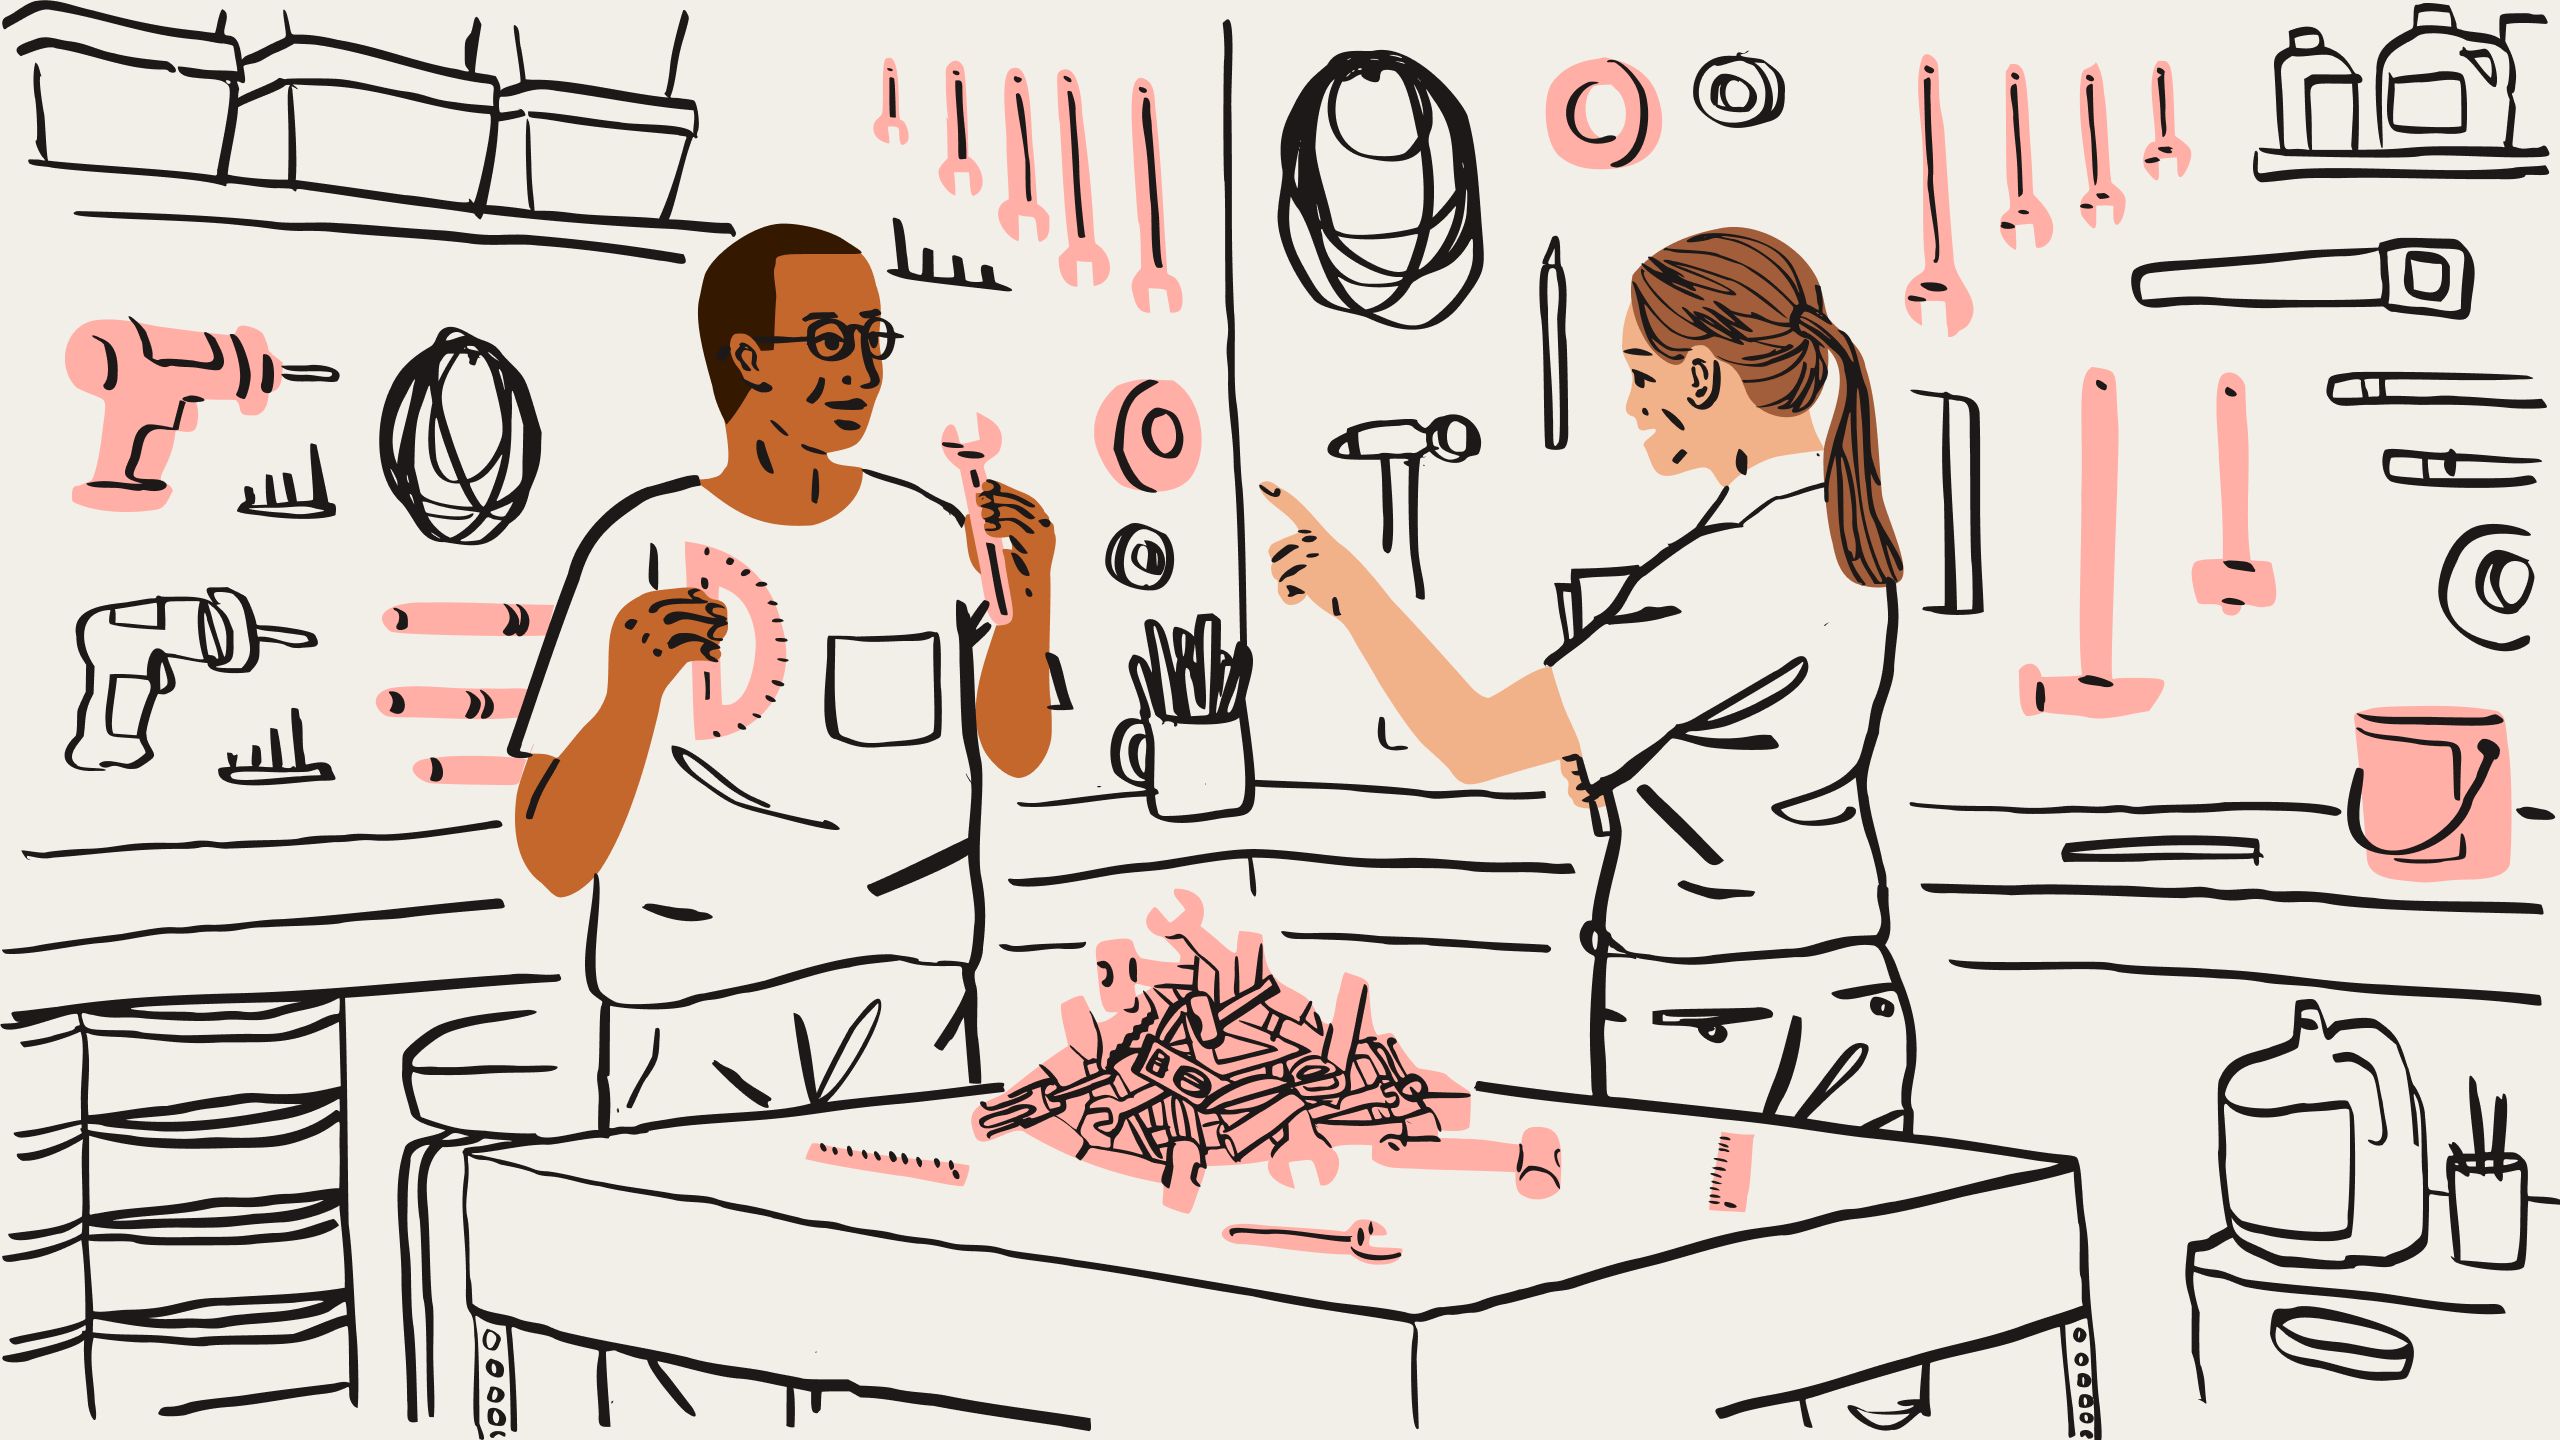 En illustration med to personer, der roder gennem en bunke værktøj, herunder skruenøgler og linealer